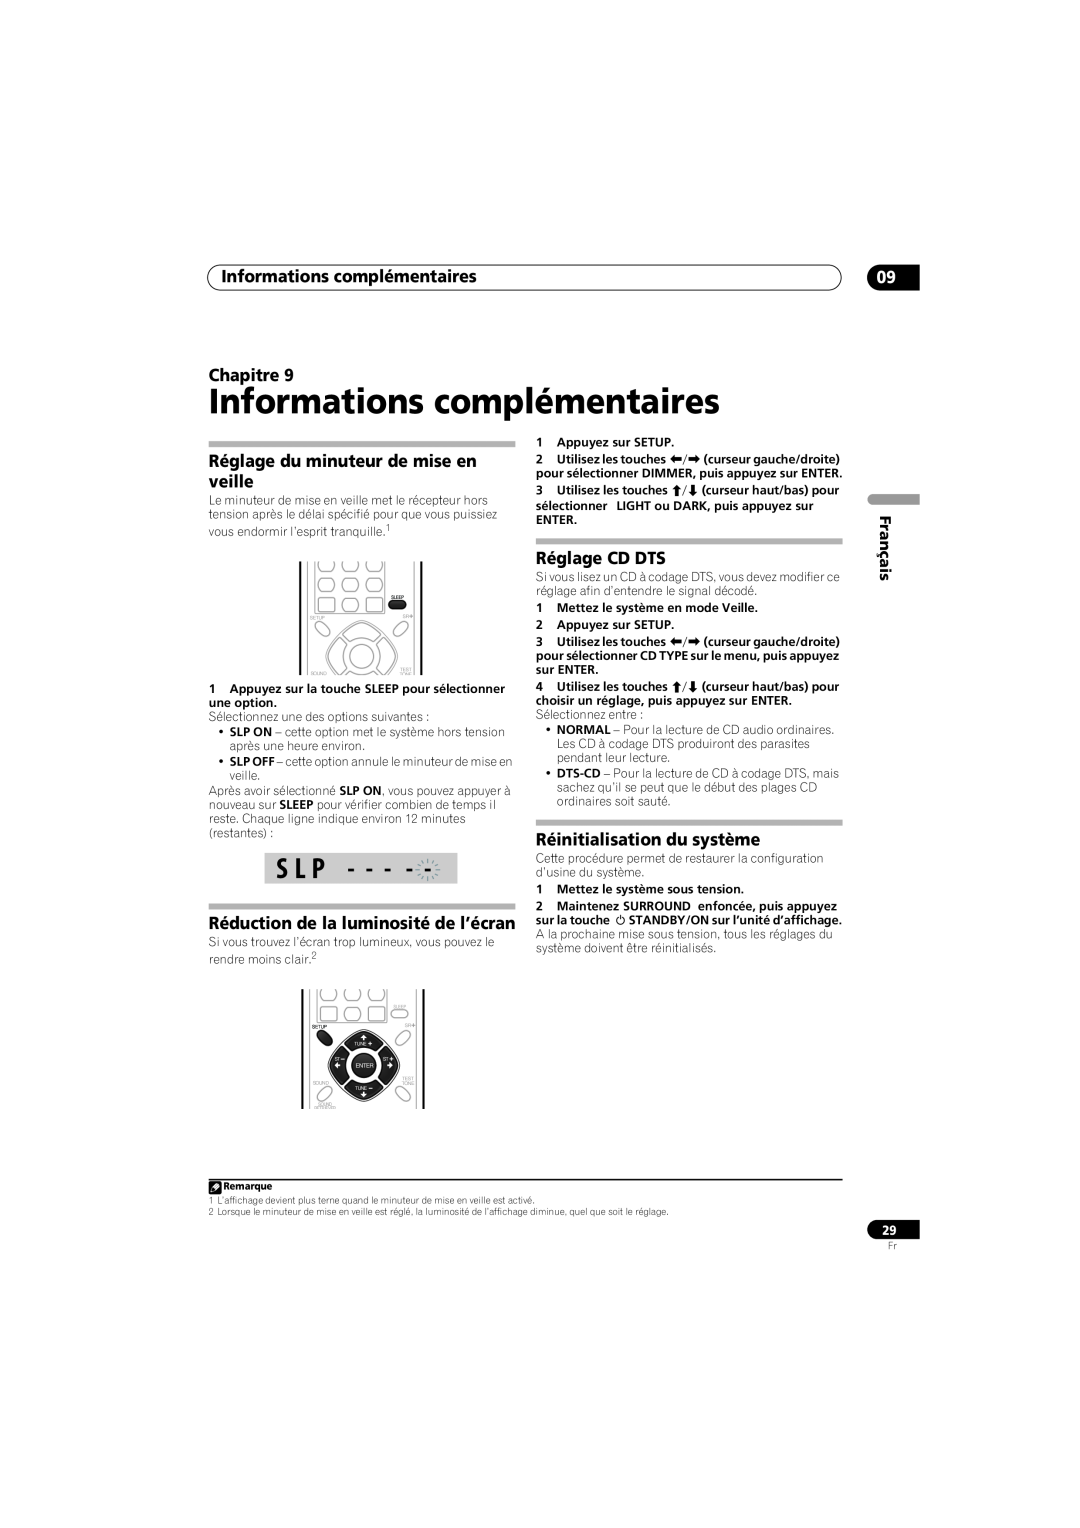 Pioneer SX-SW570 Informations complémentaires Chapitre, Réglage du minuteur de mise en veille, Réglage CD DTS, S L P 